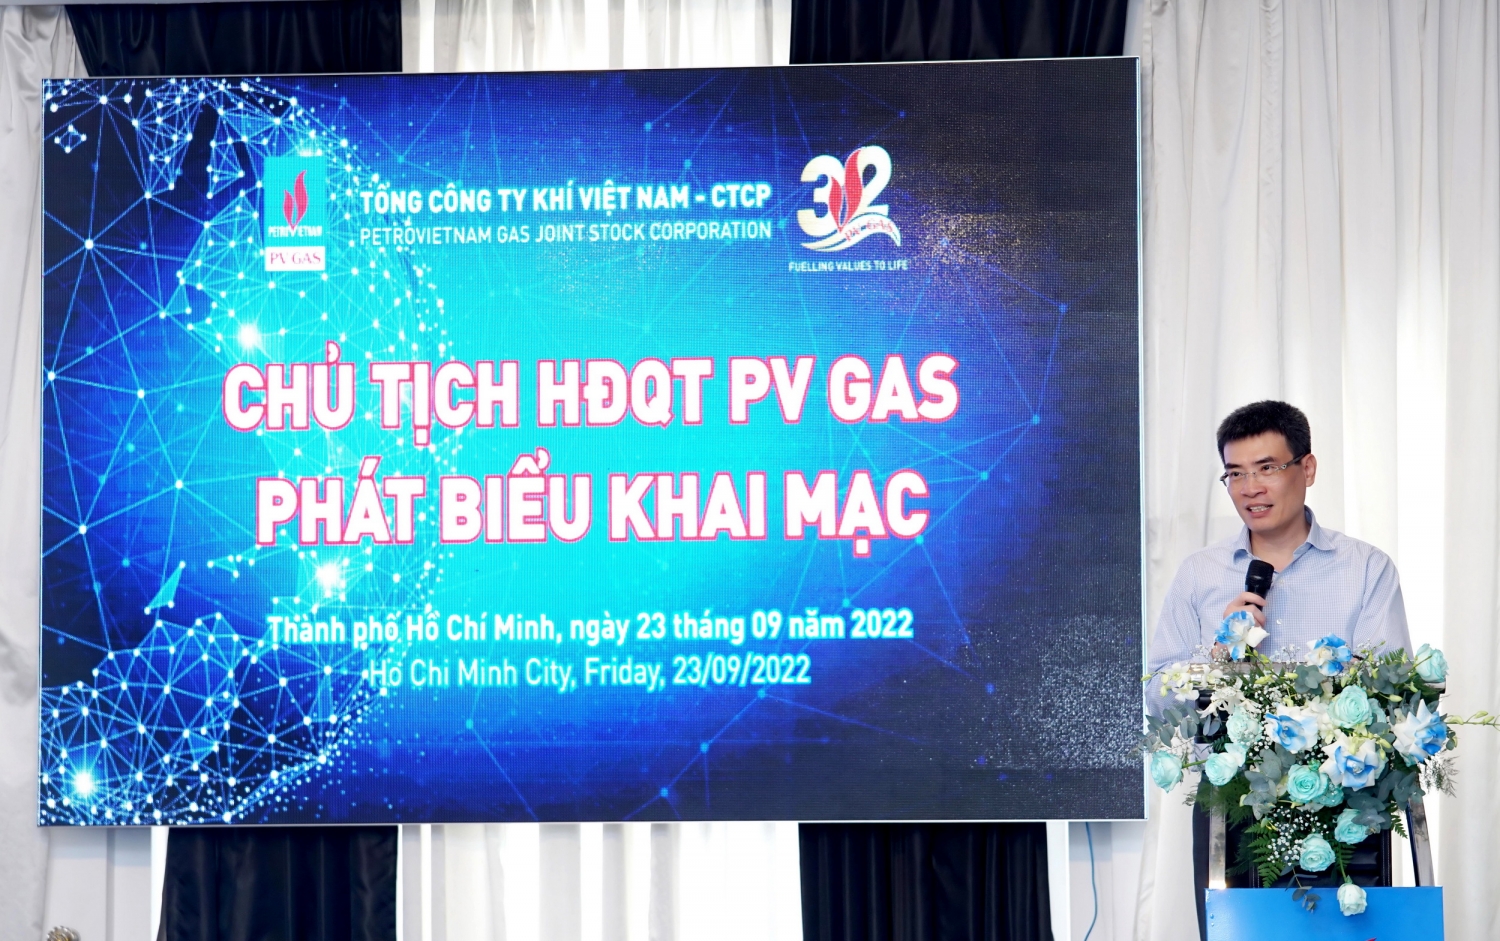 ông Dương Mạnh Sơn – Chủ tịch HĐQT PV GAS